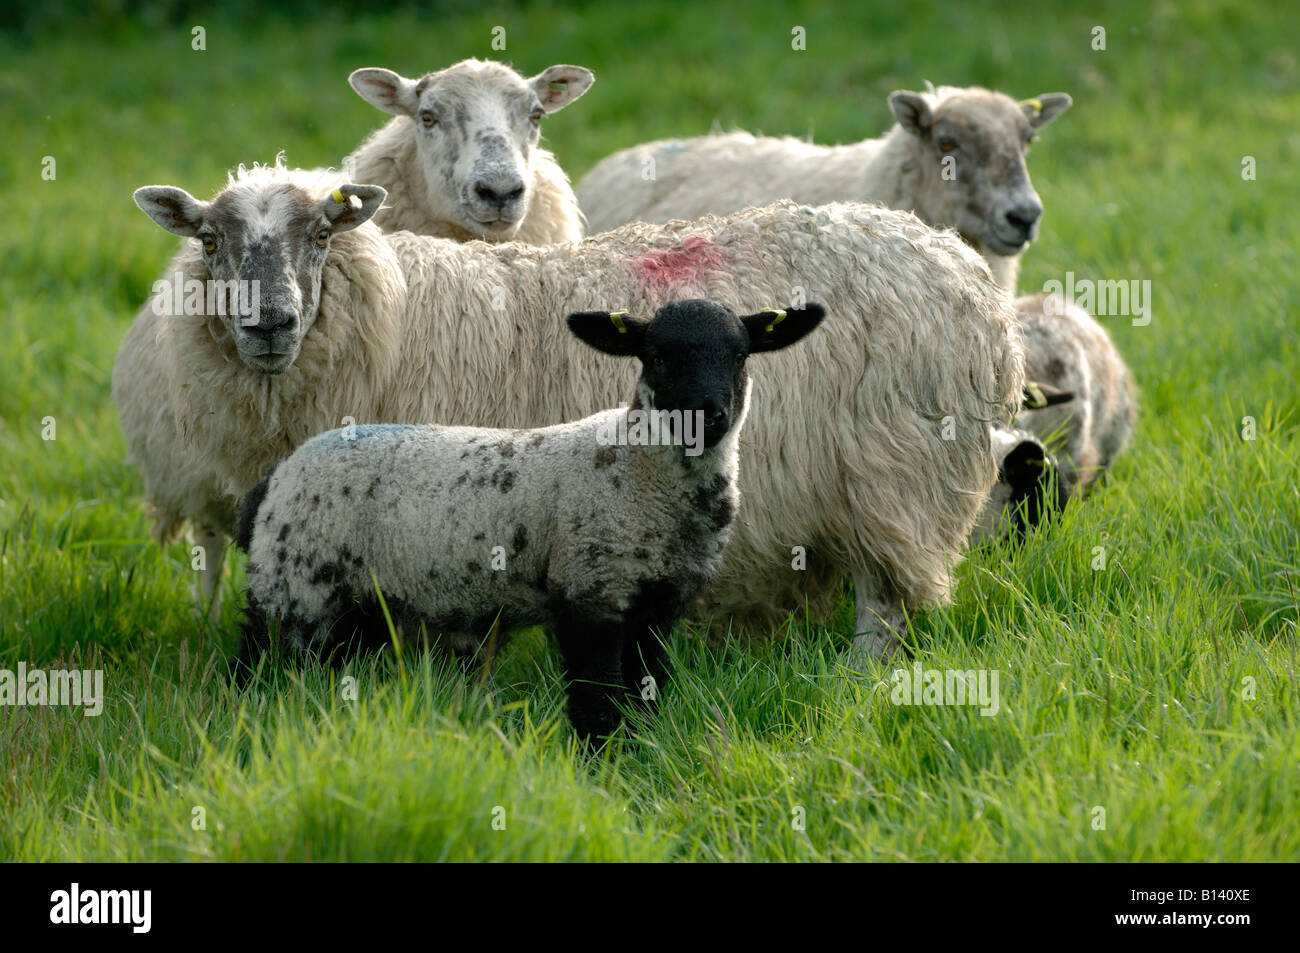 Nord de l'Angleterre mule mouton brebis avec agneau croix blackface sur la bonne herbe Banque D'Images